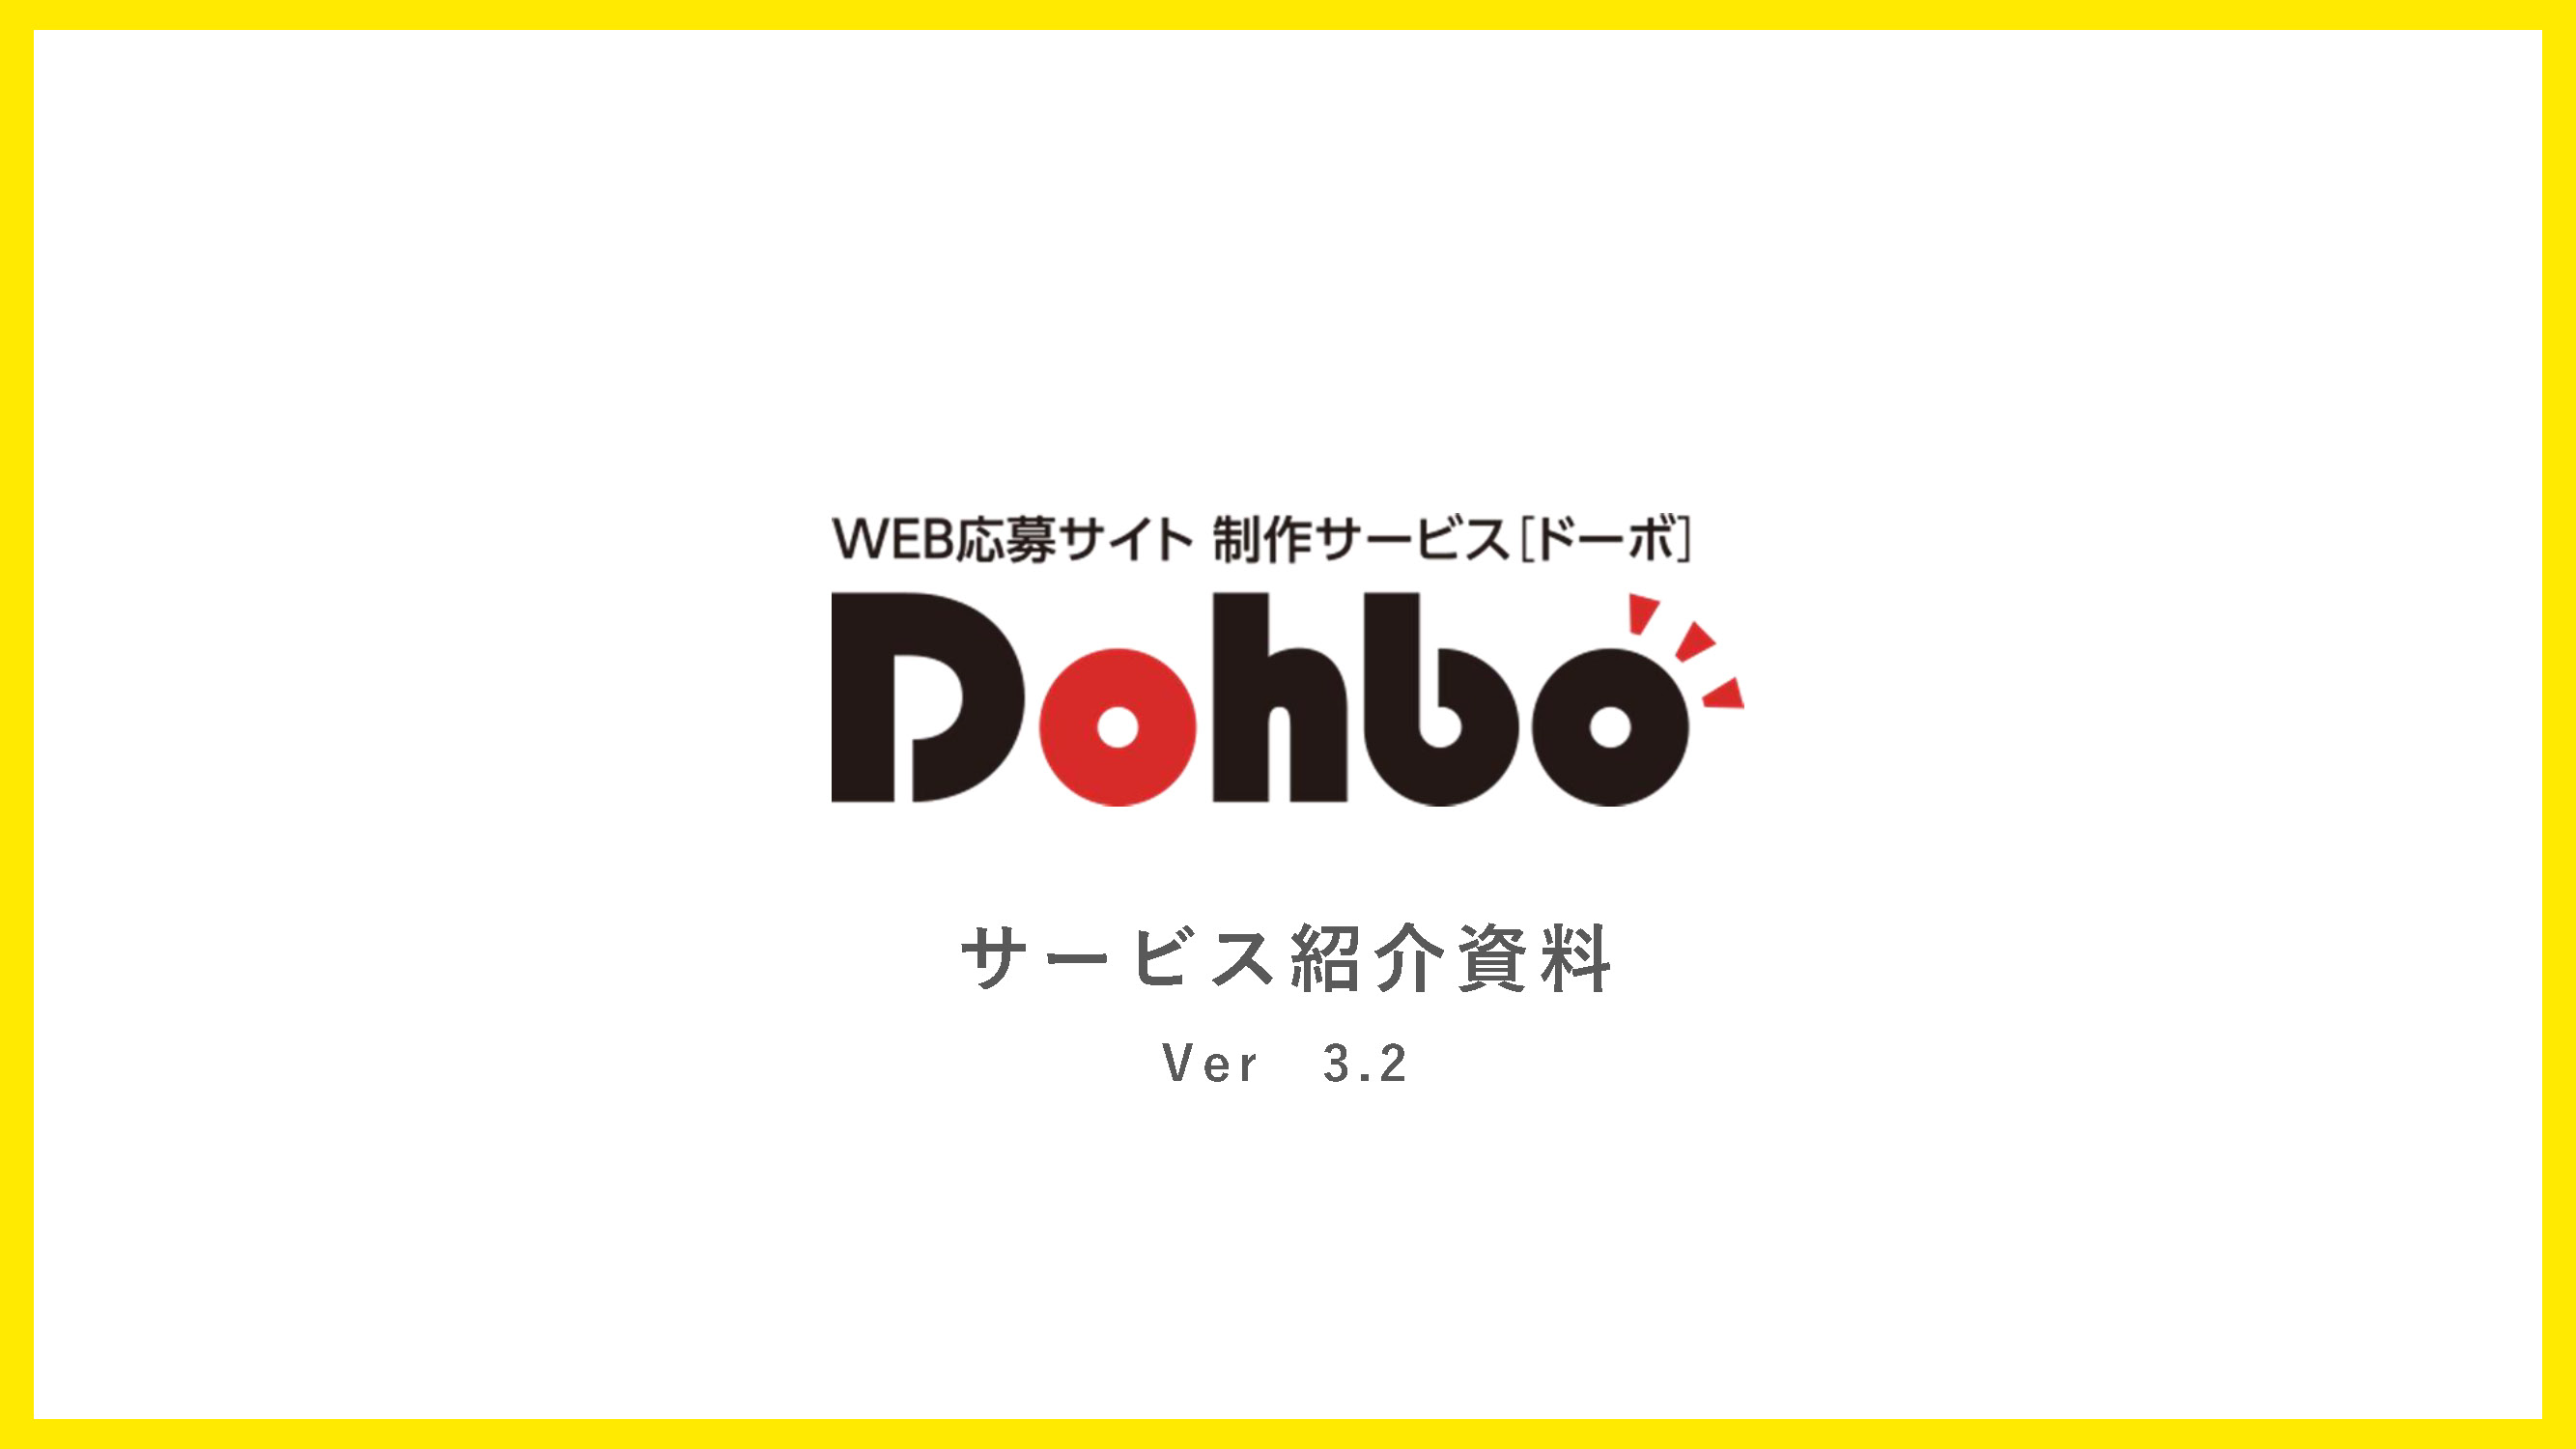 DOHBO WEB応募サイト・制作サービス 資料請求